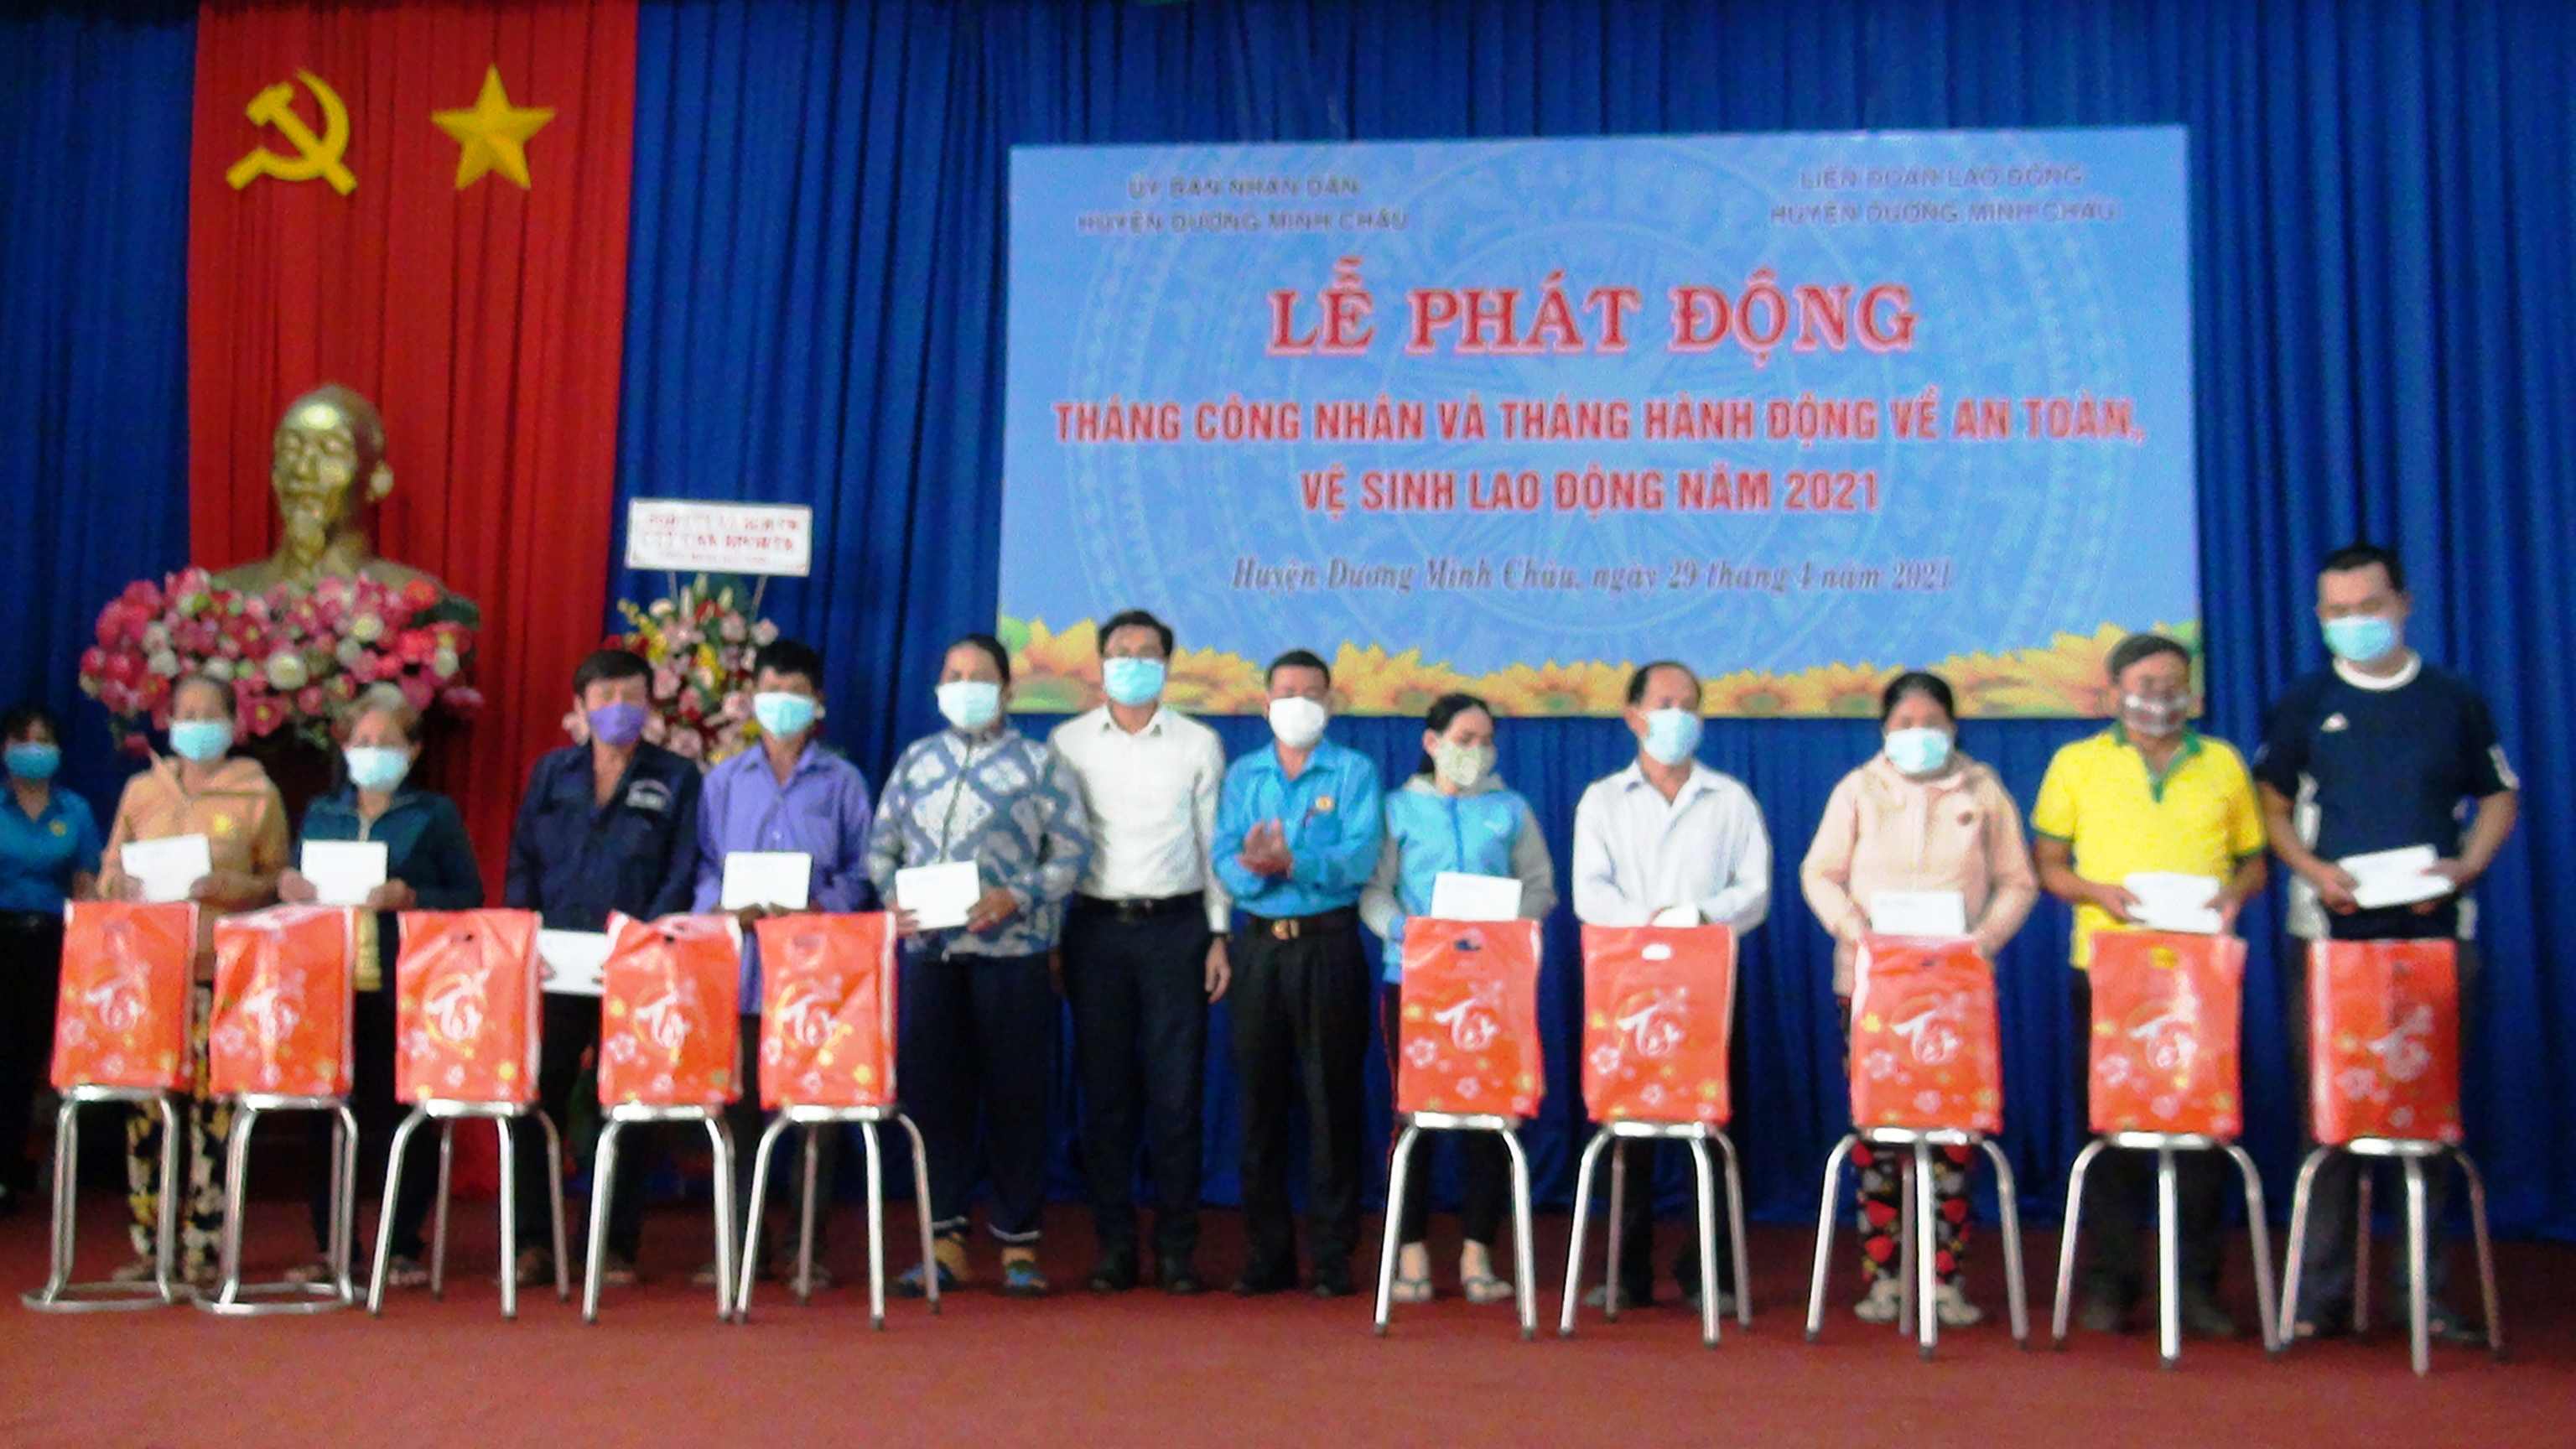 Huyện Dương Minh Châu phát động Tháng Công nhân,  Tháng hành động về an toàn vệ sinh lao động năm 2021